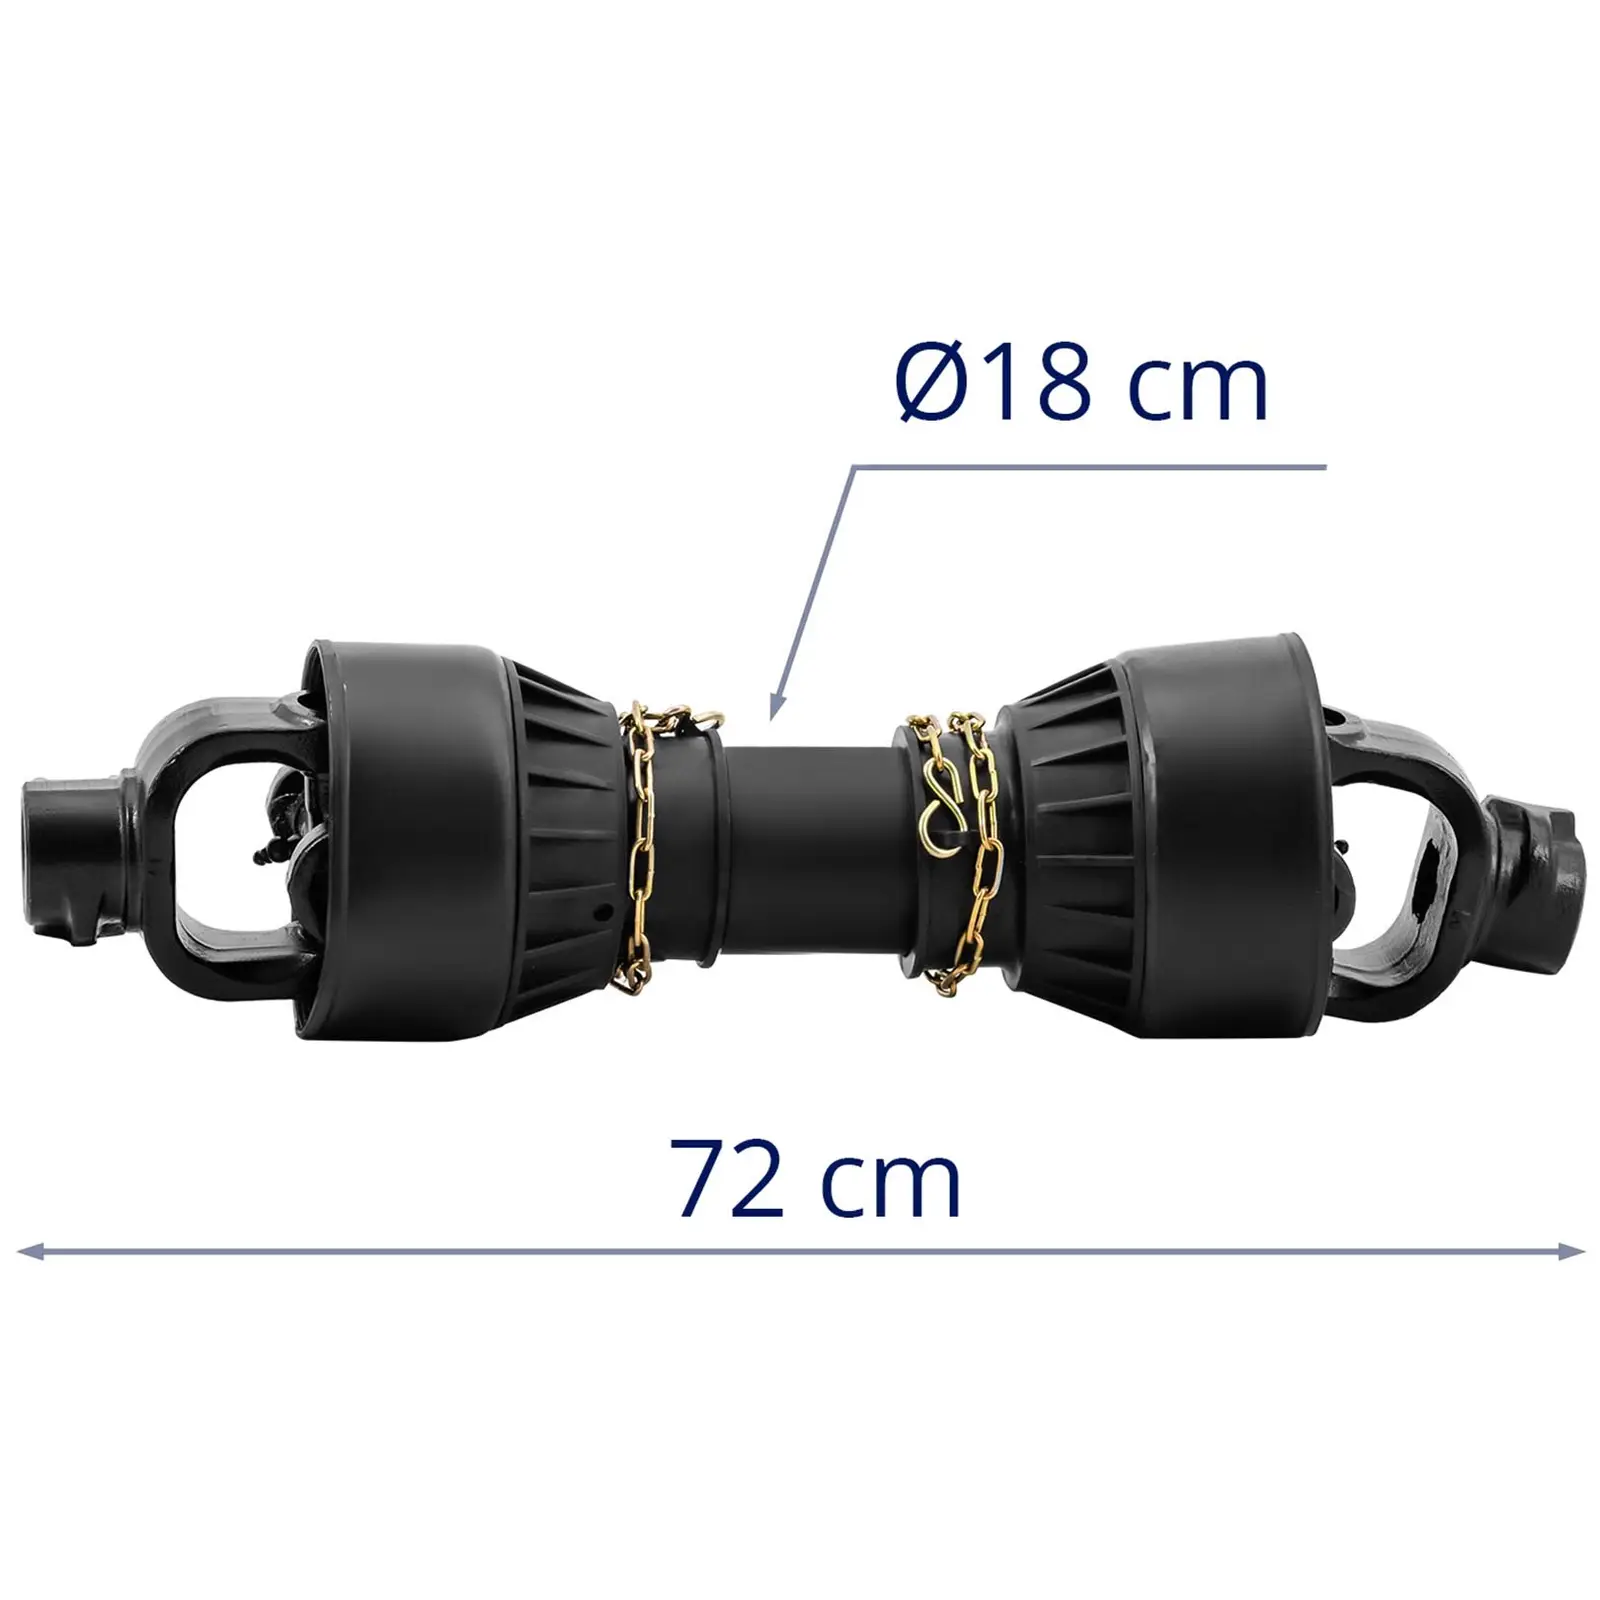 Albero di trasmissione con compensazione della lunghezza - 62 - 72 cm - 1 3/8"/ 6 denti